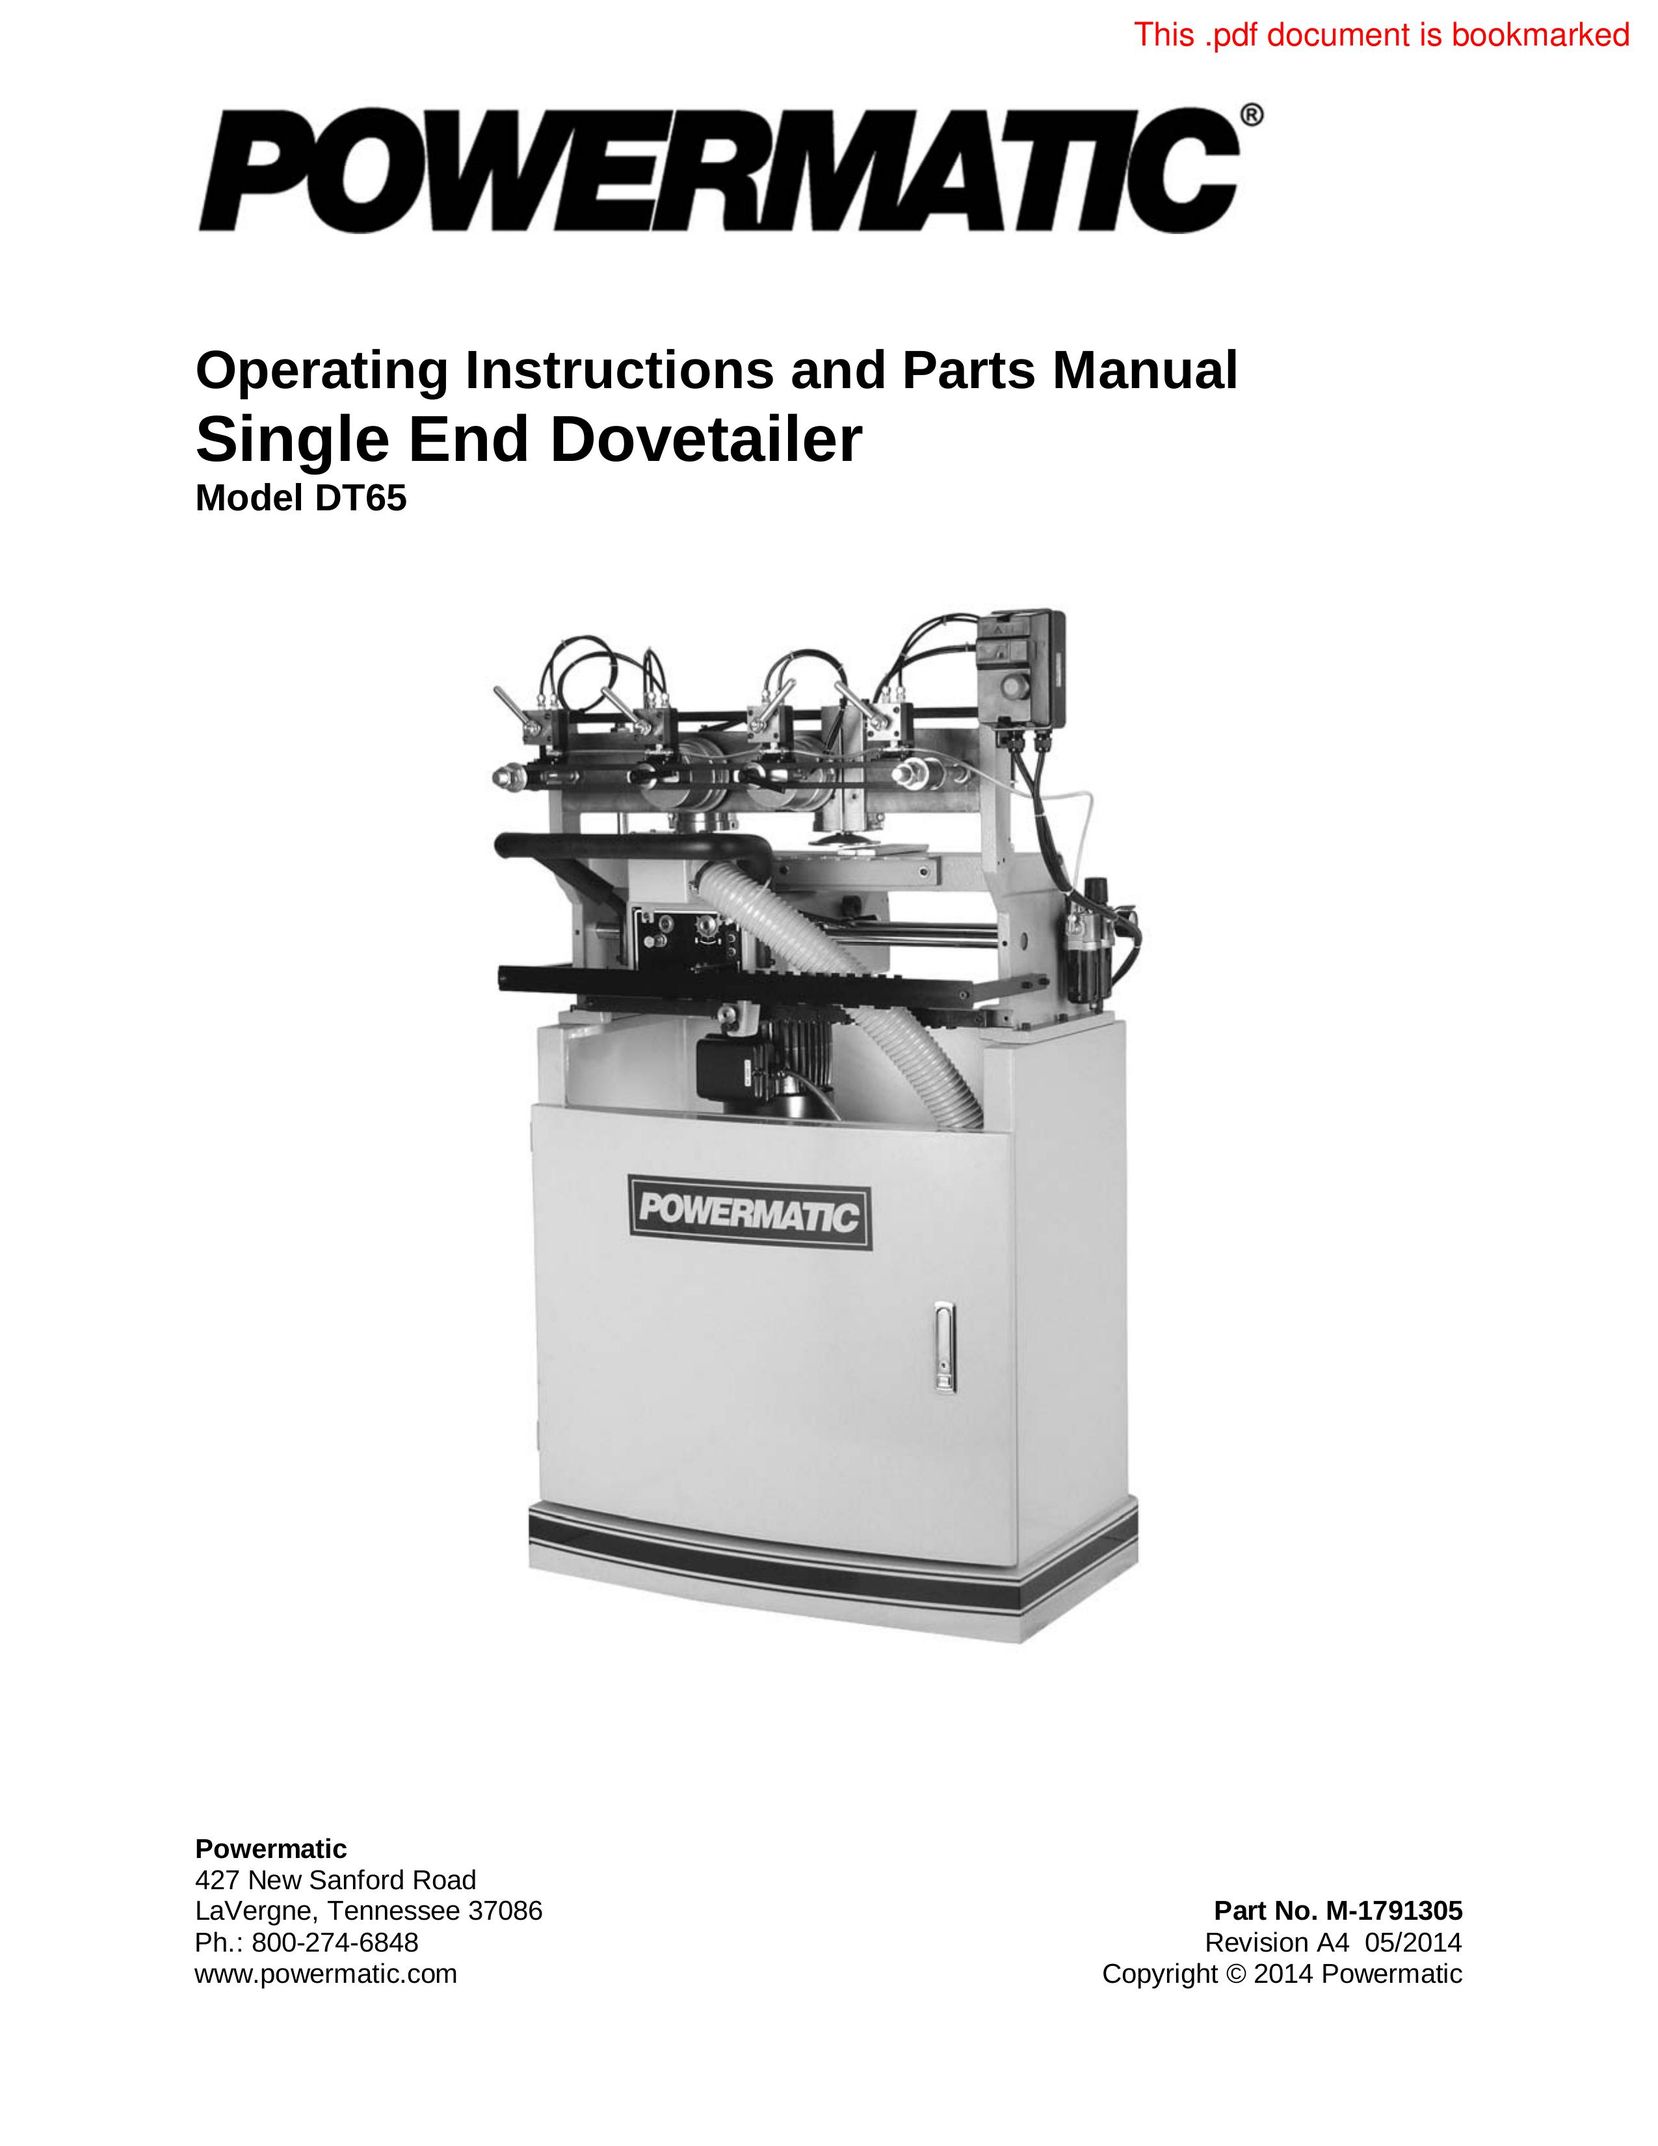 Powermatic DT65 Oven User Manual